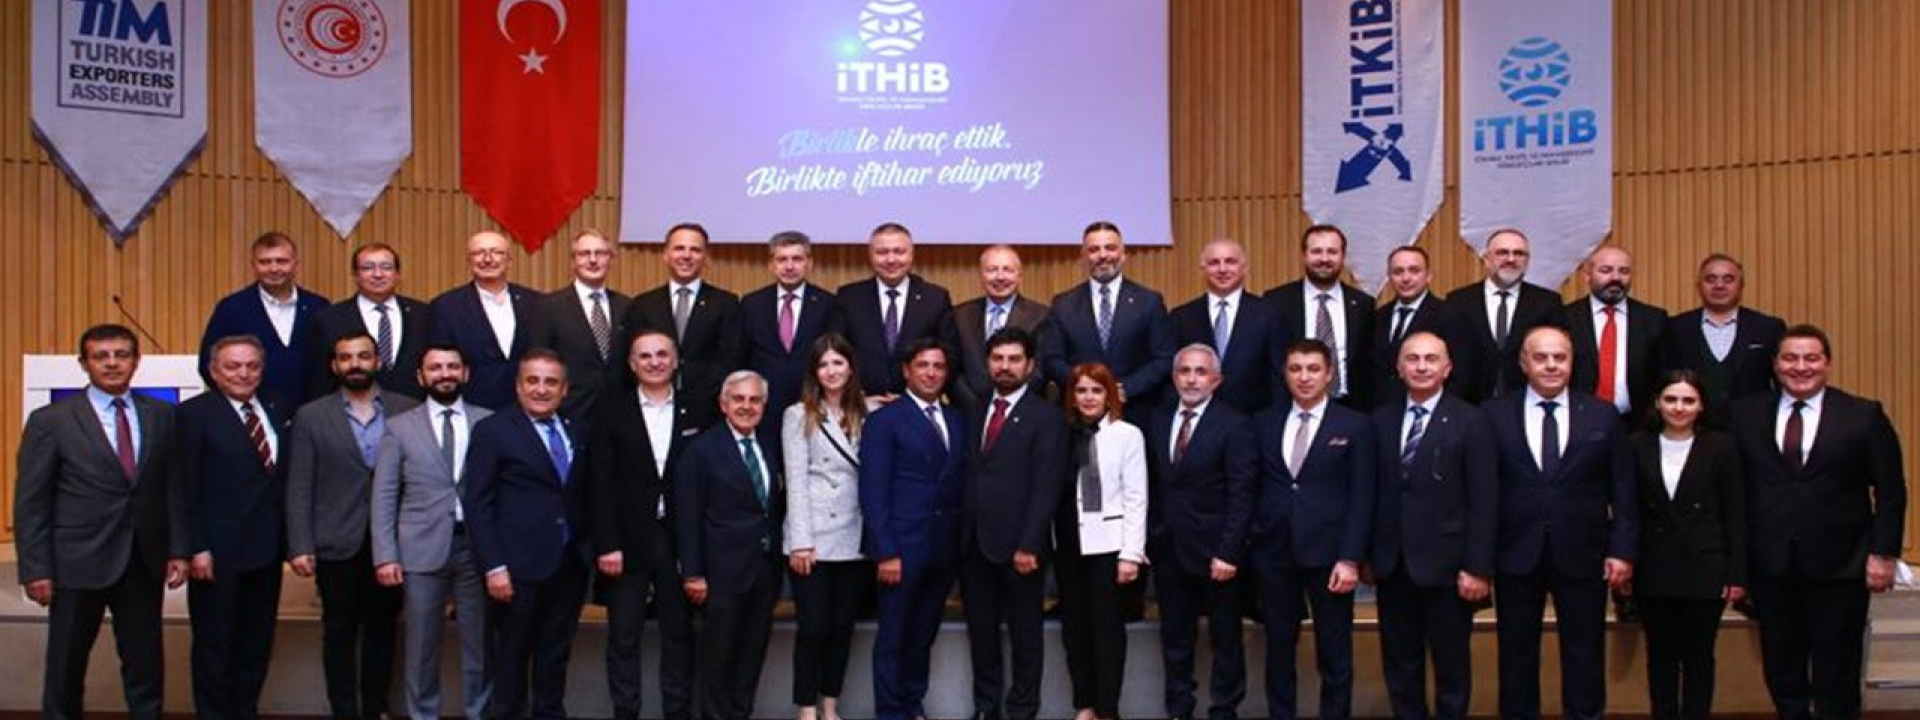 NTV - İTHİB İhracata Değer Katanlar 2021 Ödül Töreni